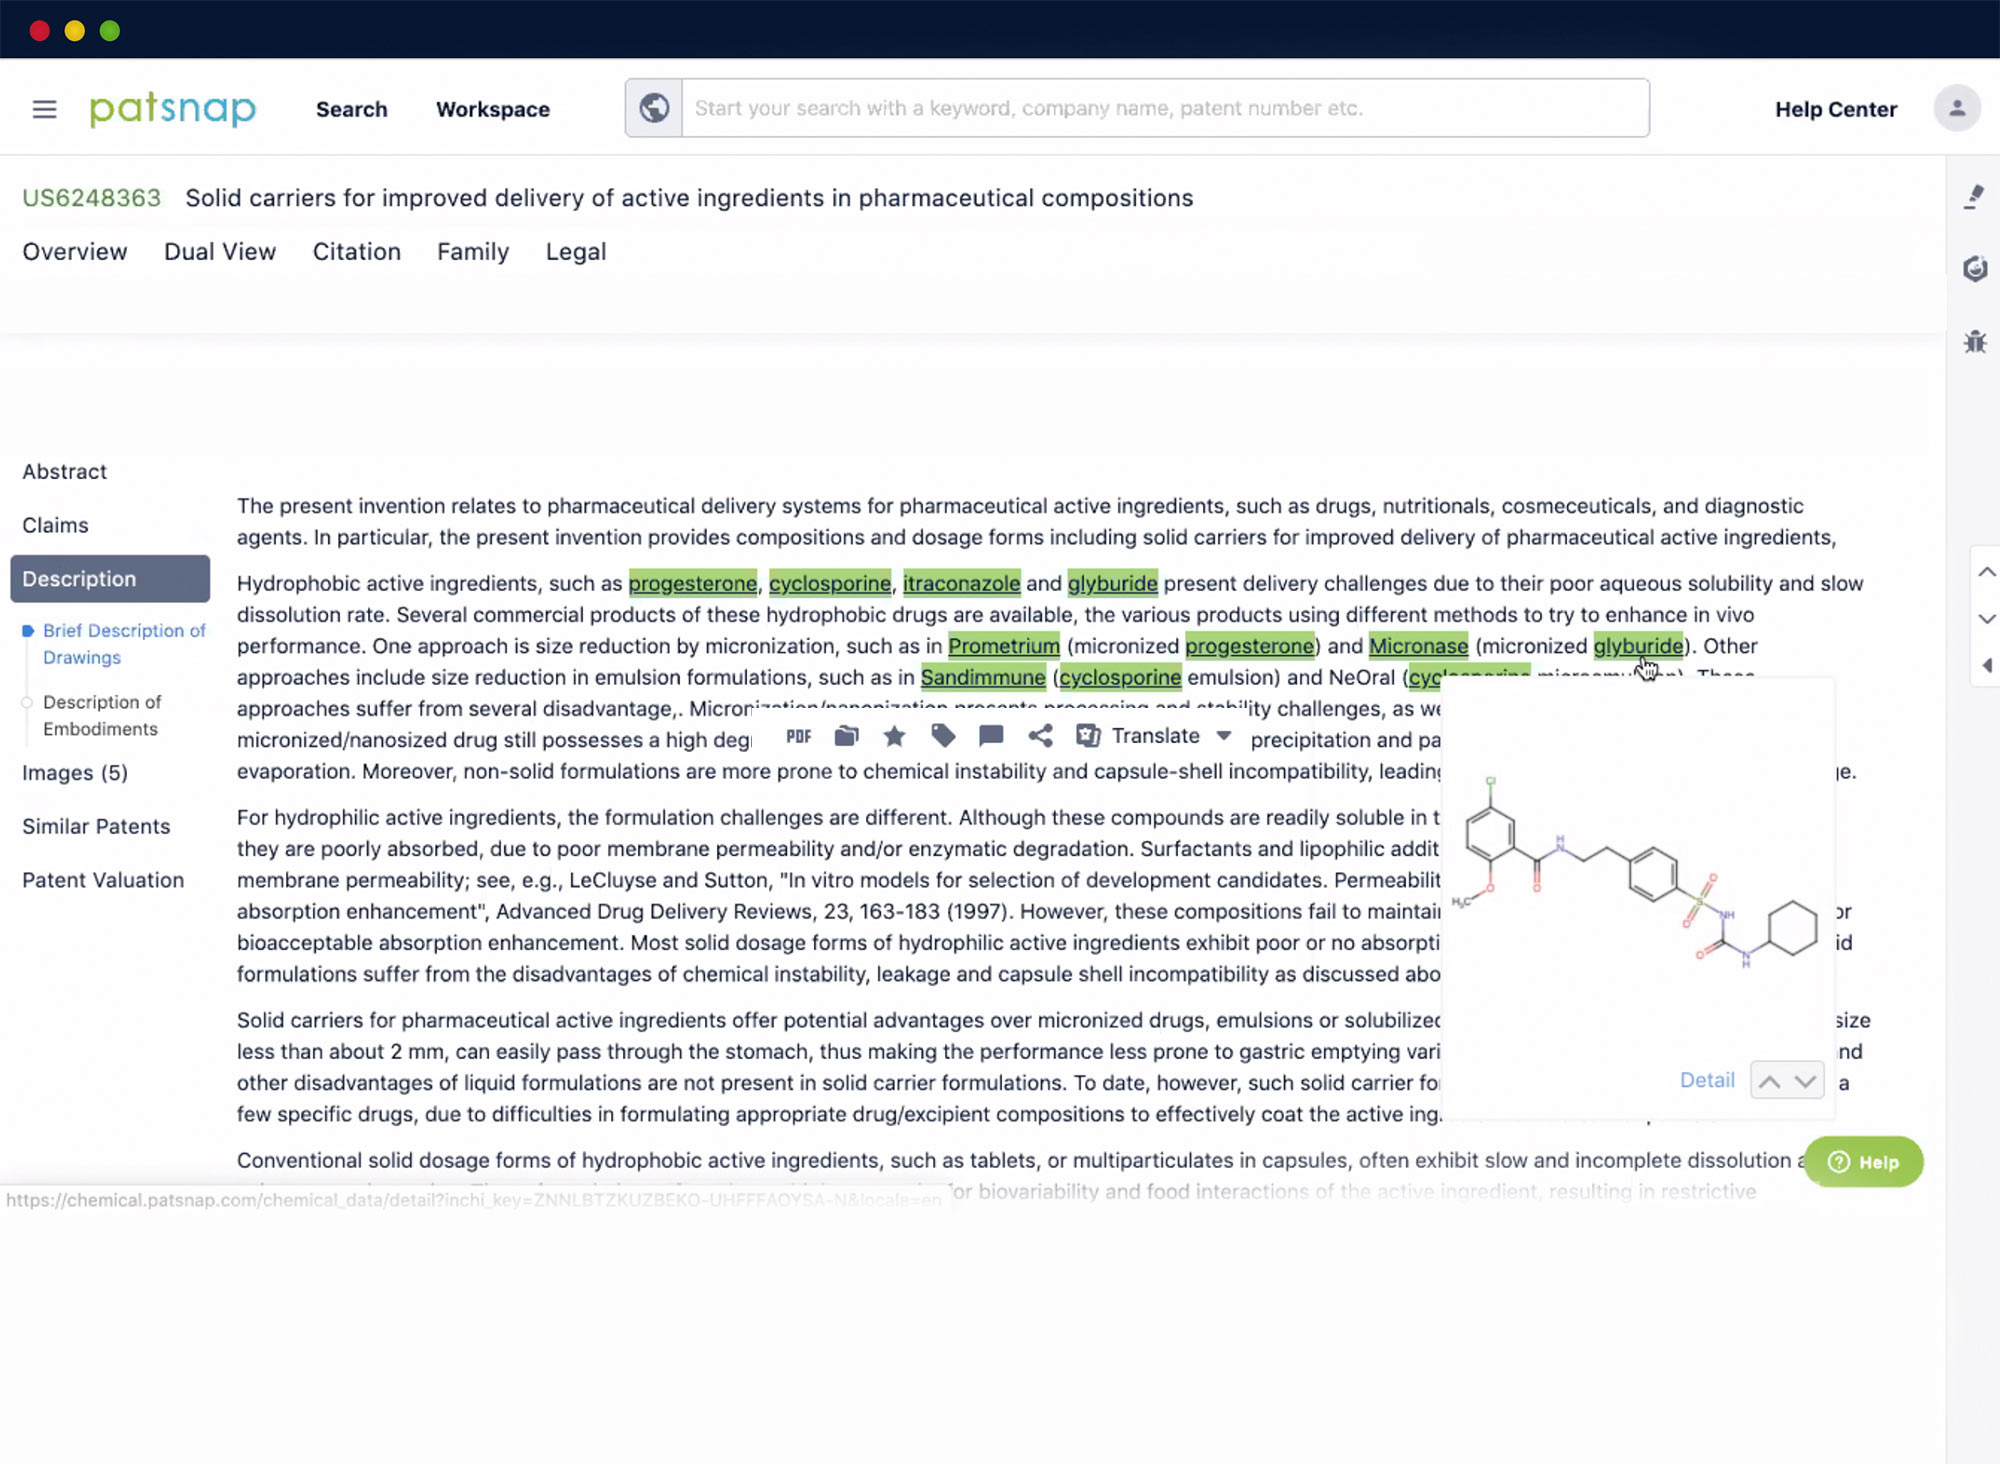 특허 설명의 화학 플랫폼 화면 캡처